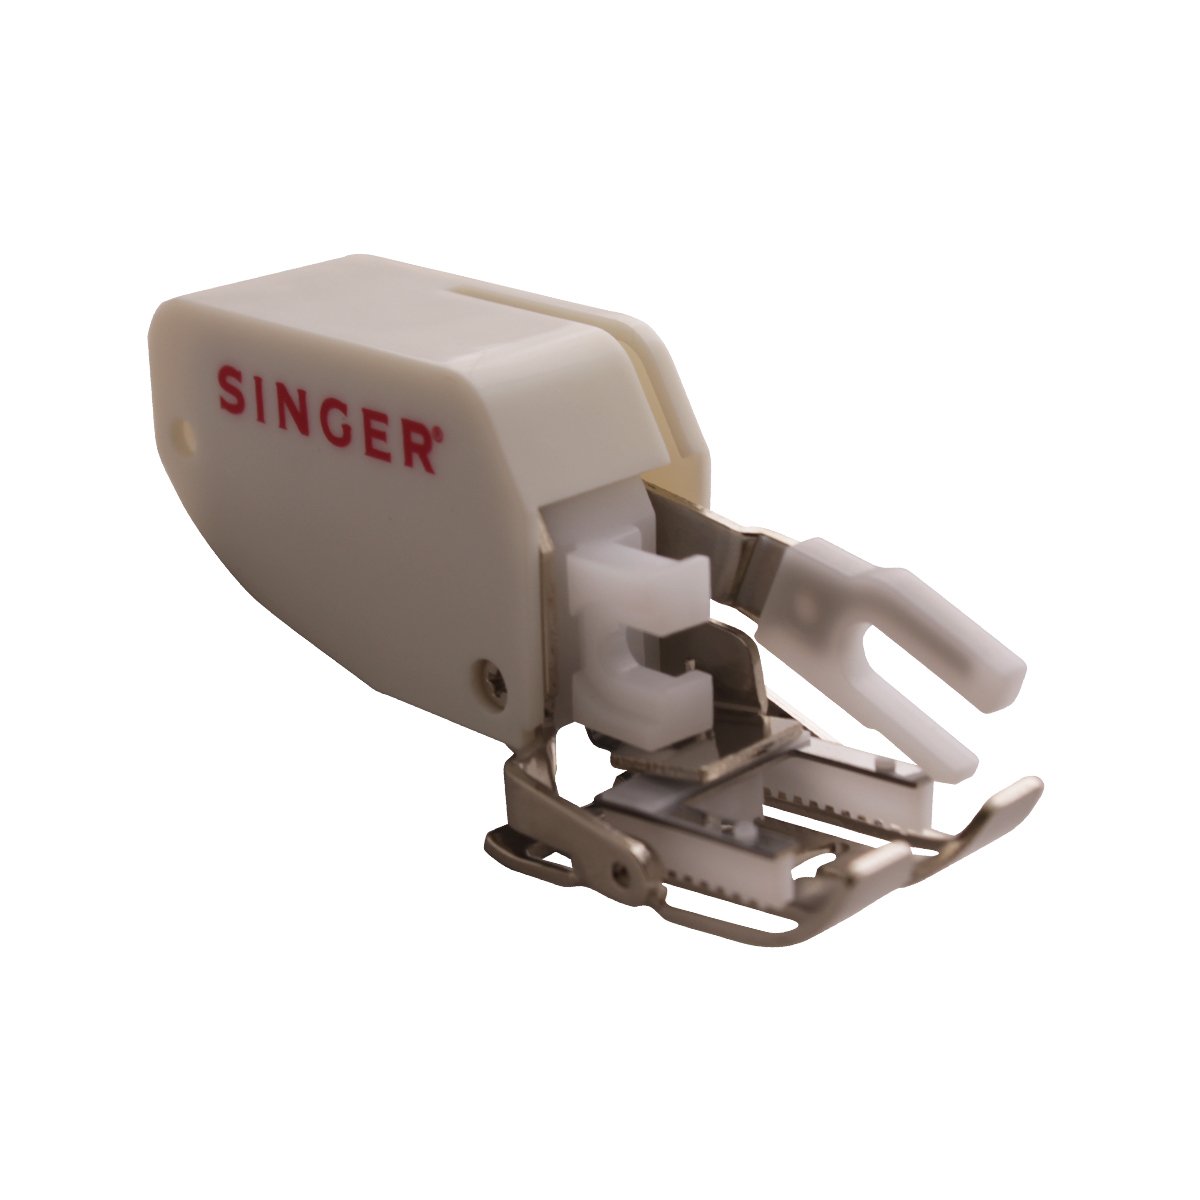 Prensatelas Singer de avance simultáneo para coser colchas y telas gruesas para máquinas de coser de caña baja, 250027106